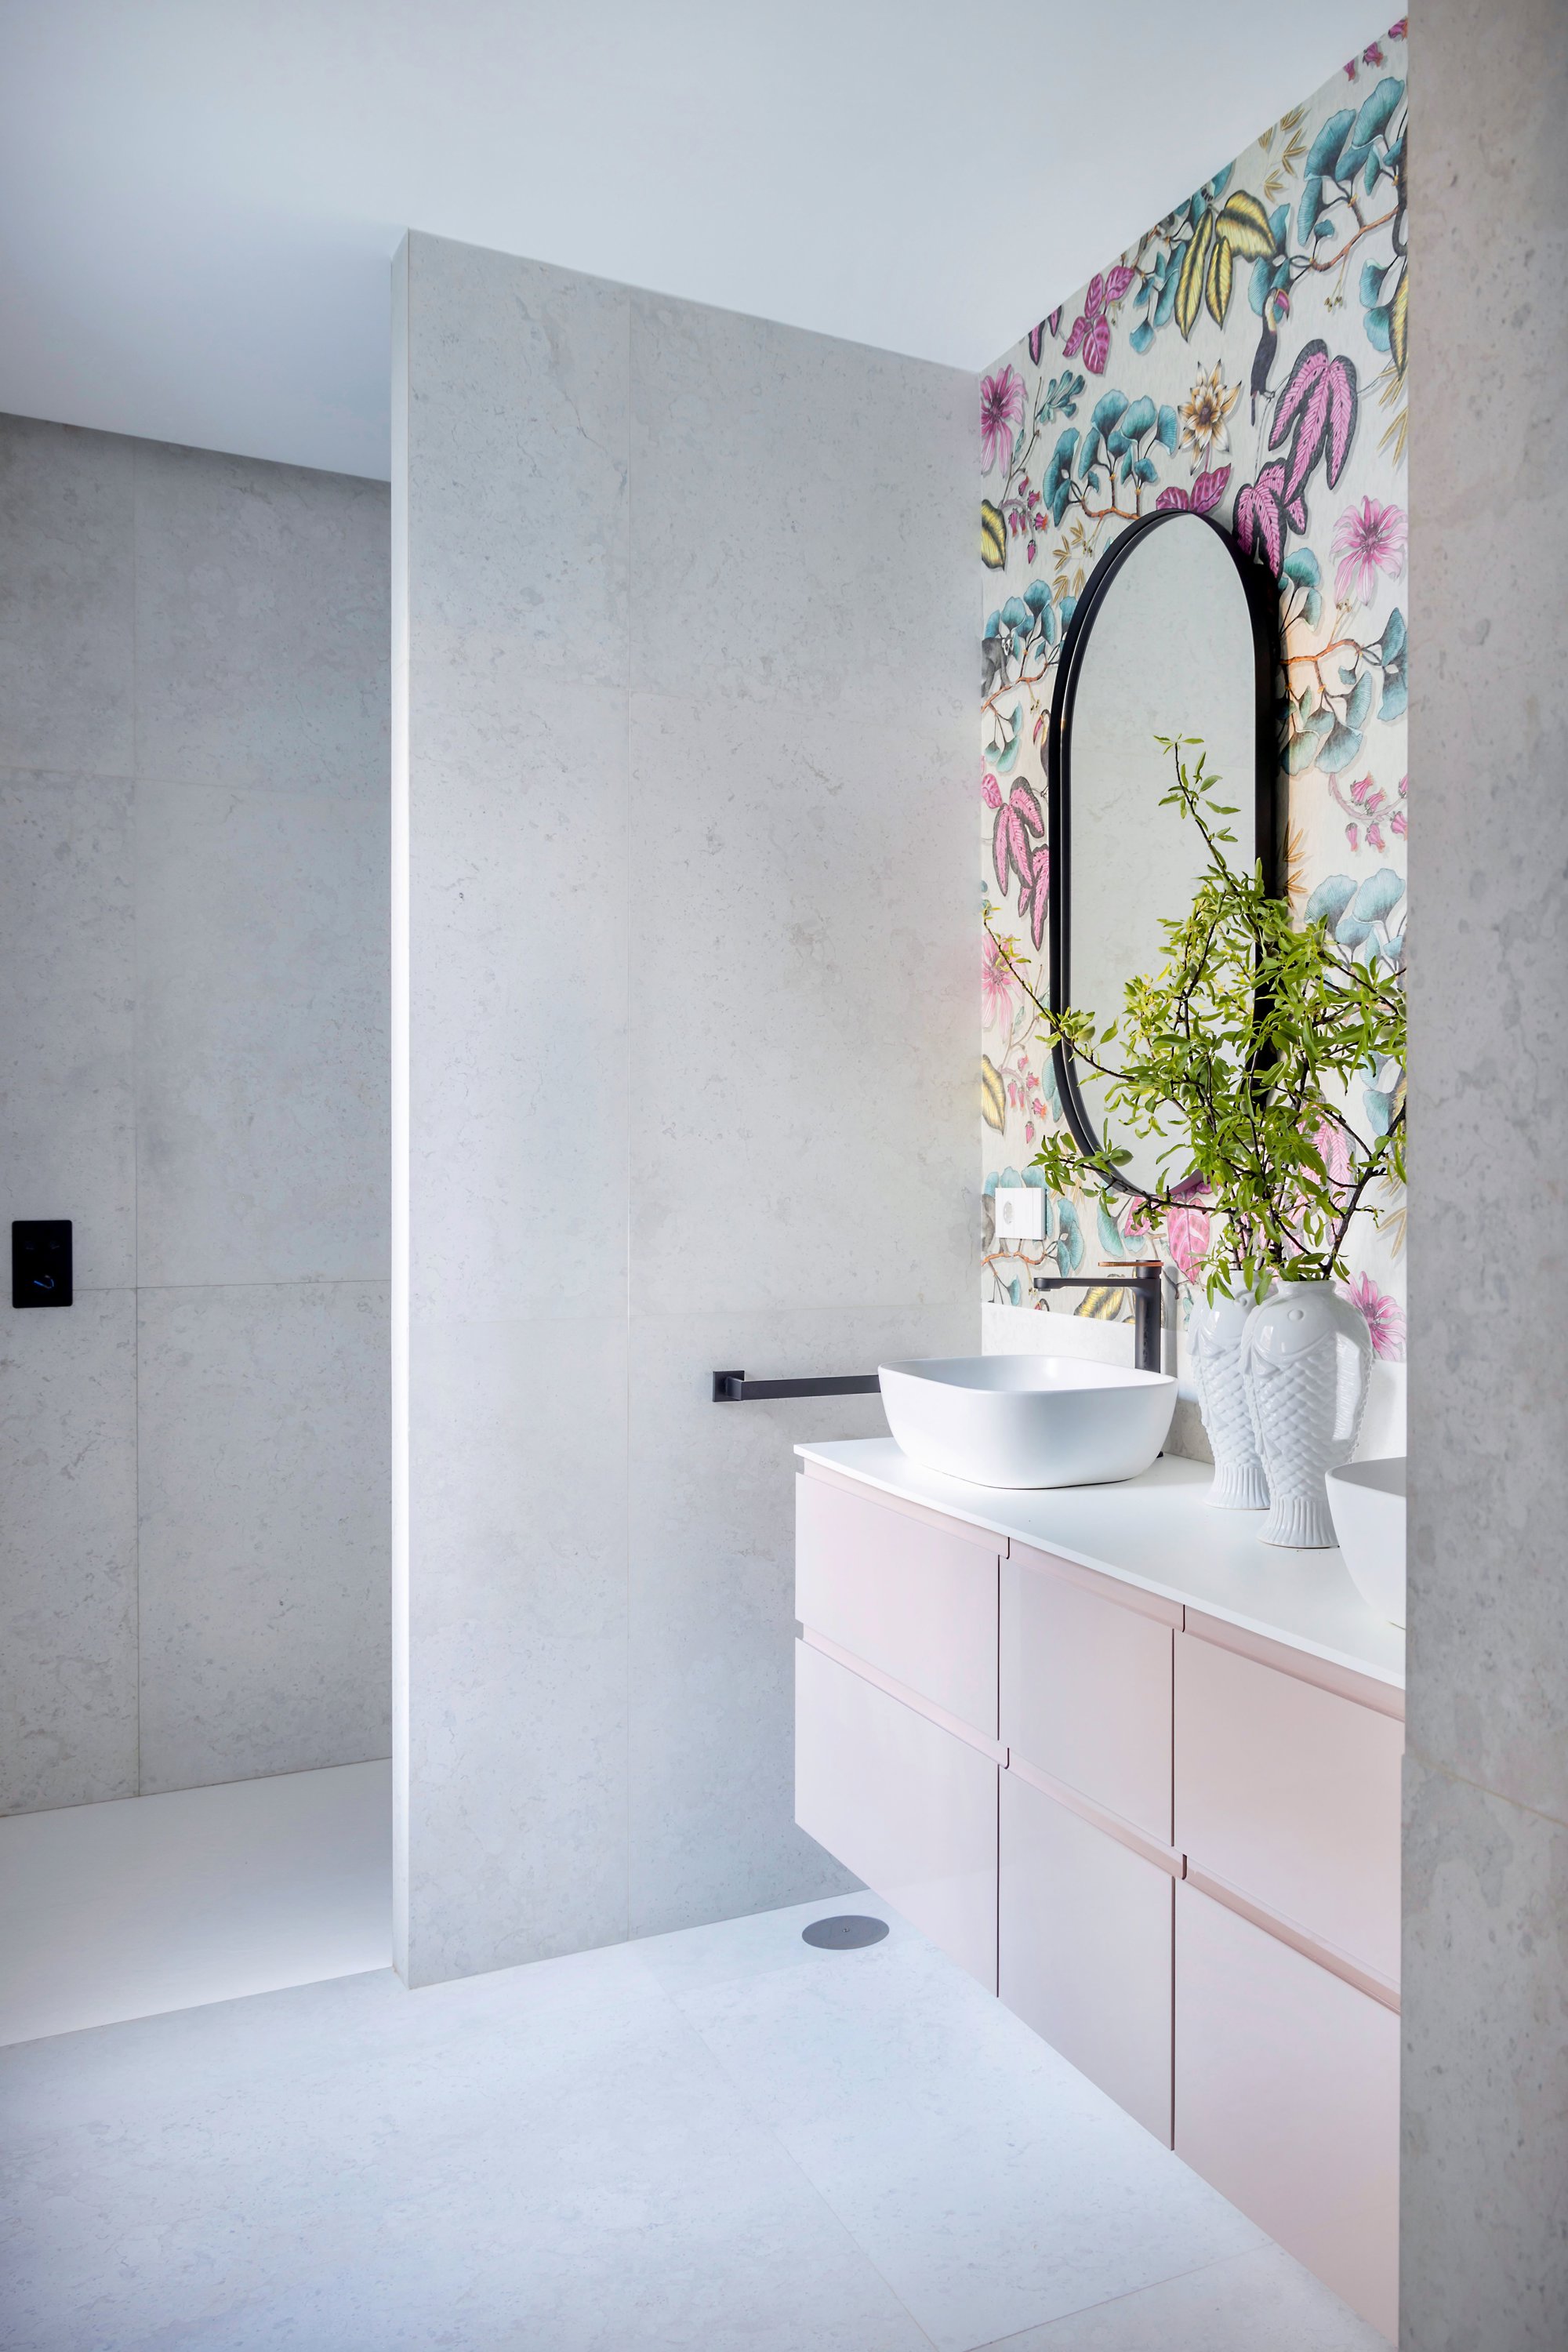 Muro separador en un baño en tonos rosas y gris claro.